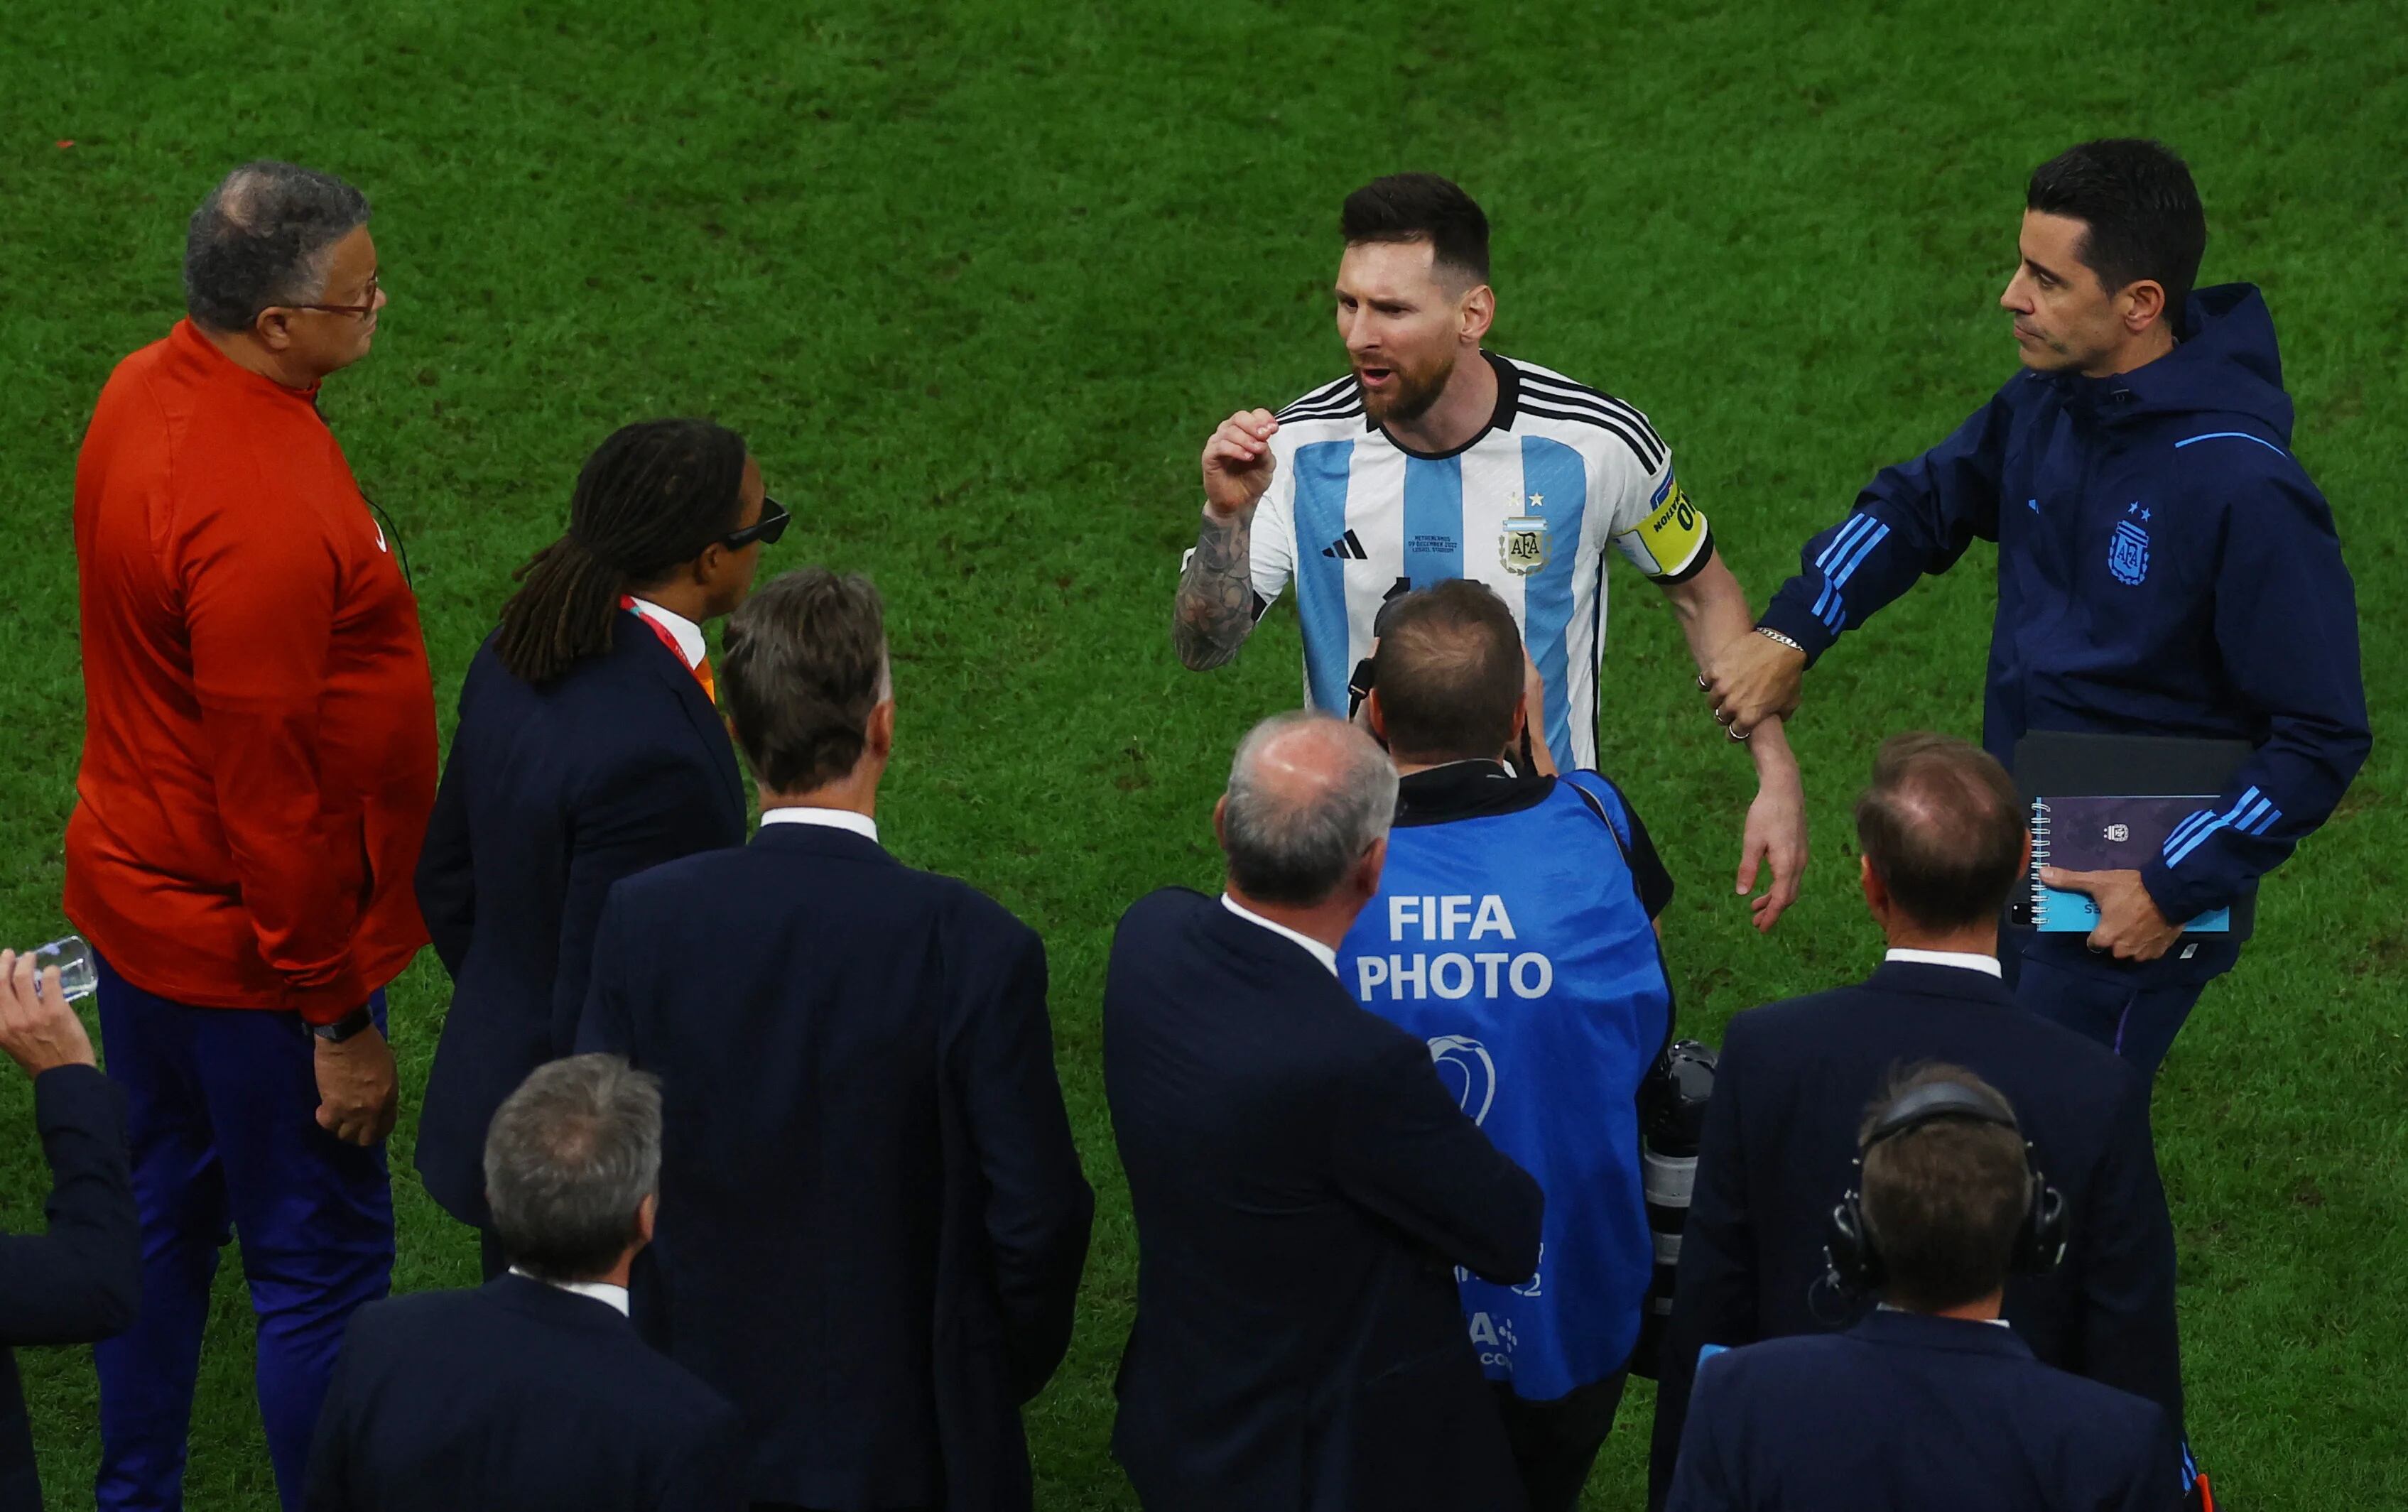 La férrea defensa de una gloria del fútbol alemán a Argentina y Messi tras los dichos de Van Gaal